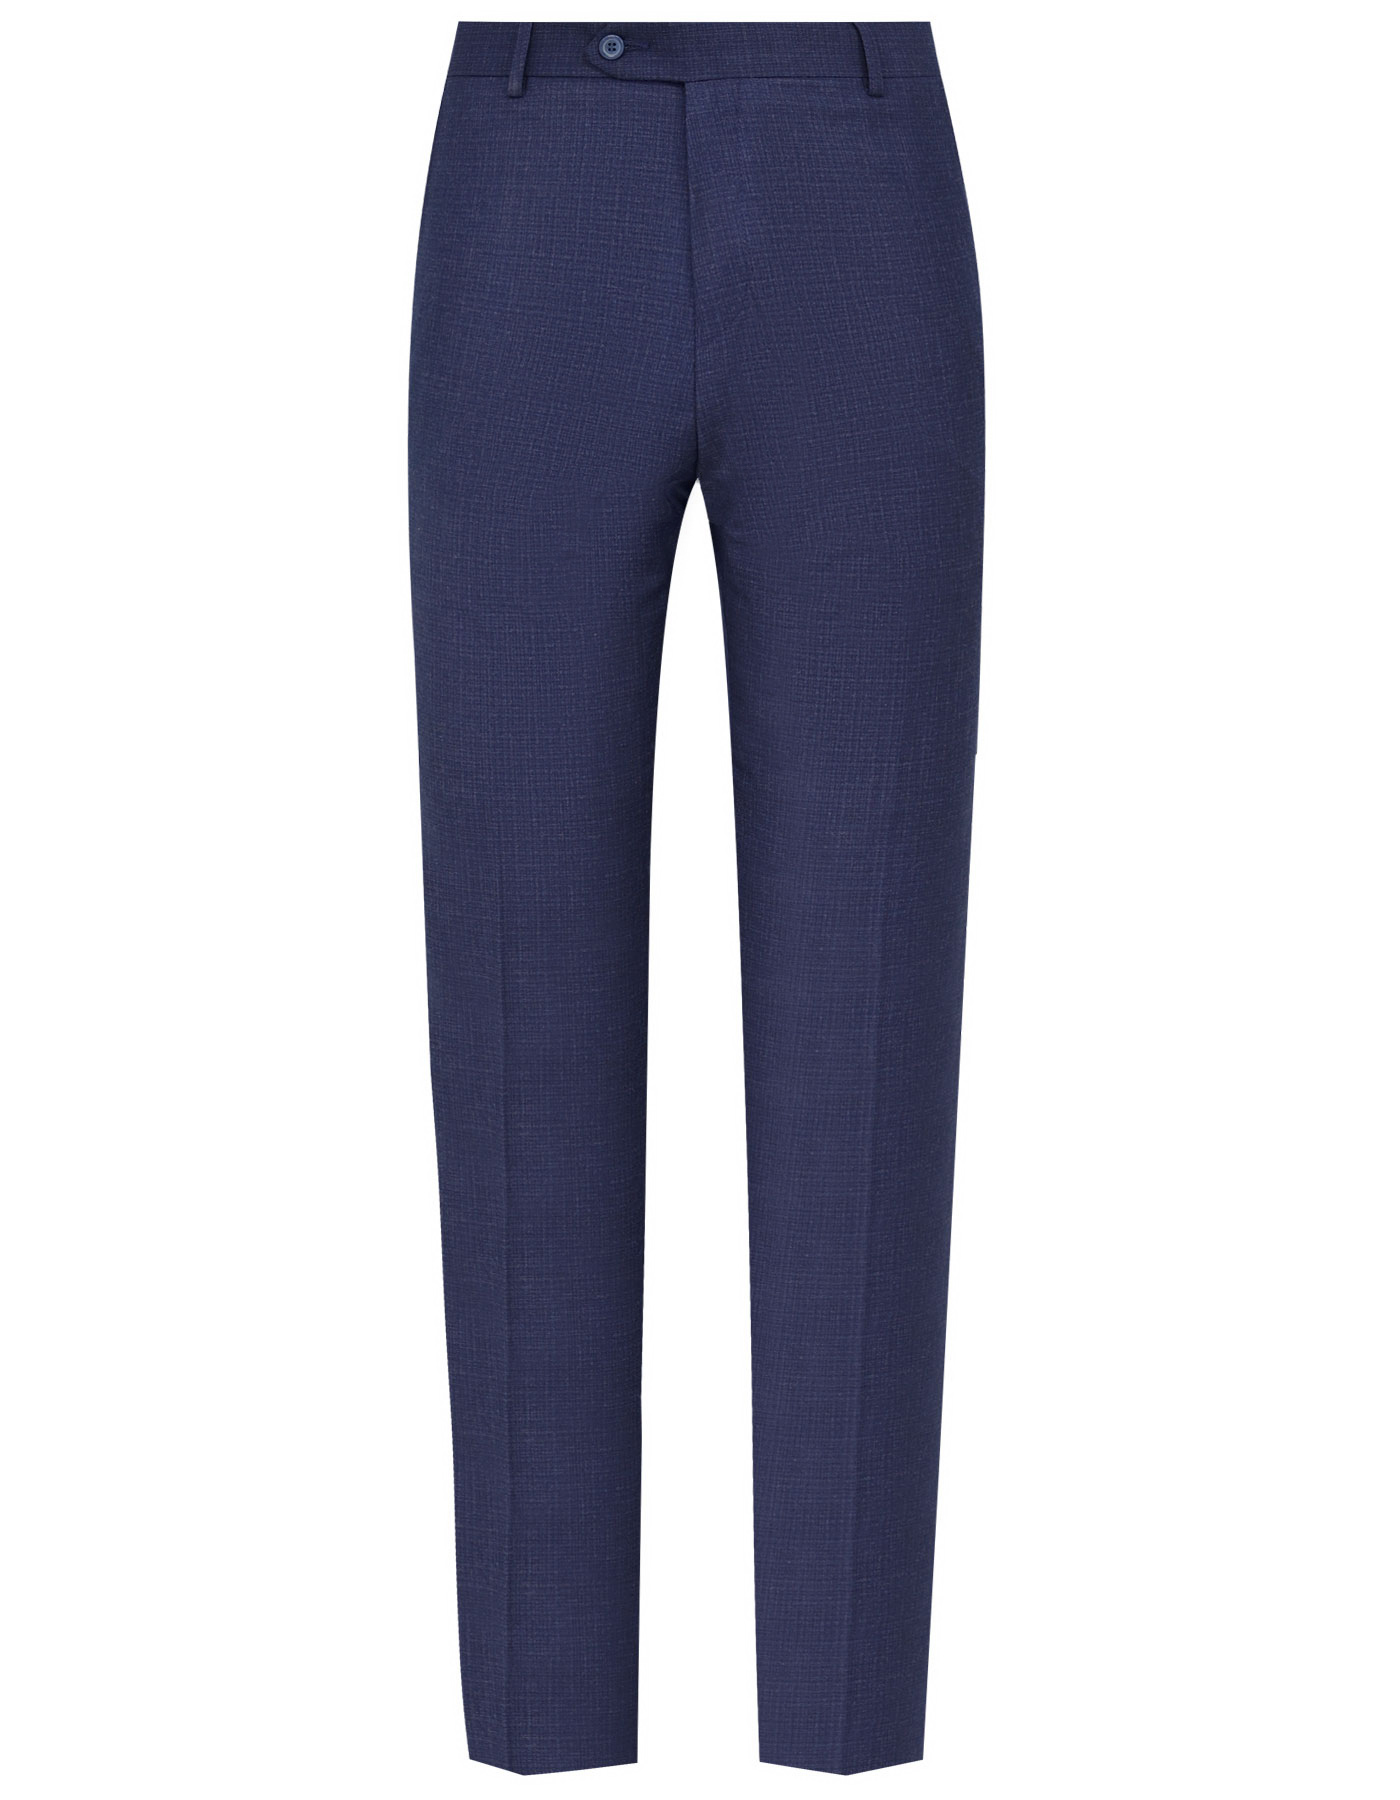 Blue Texture Classic Fit Suit For Men |Uniworth